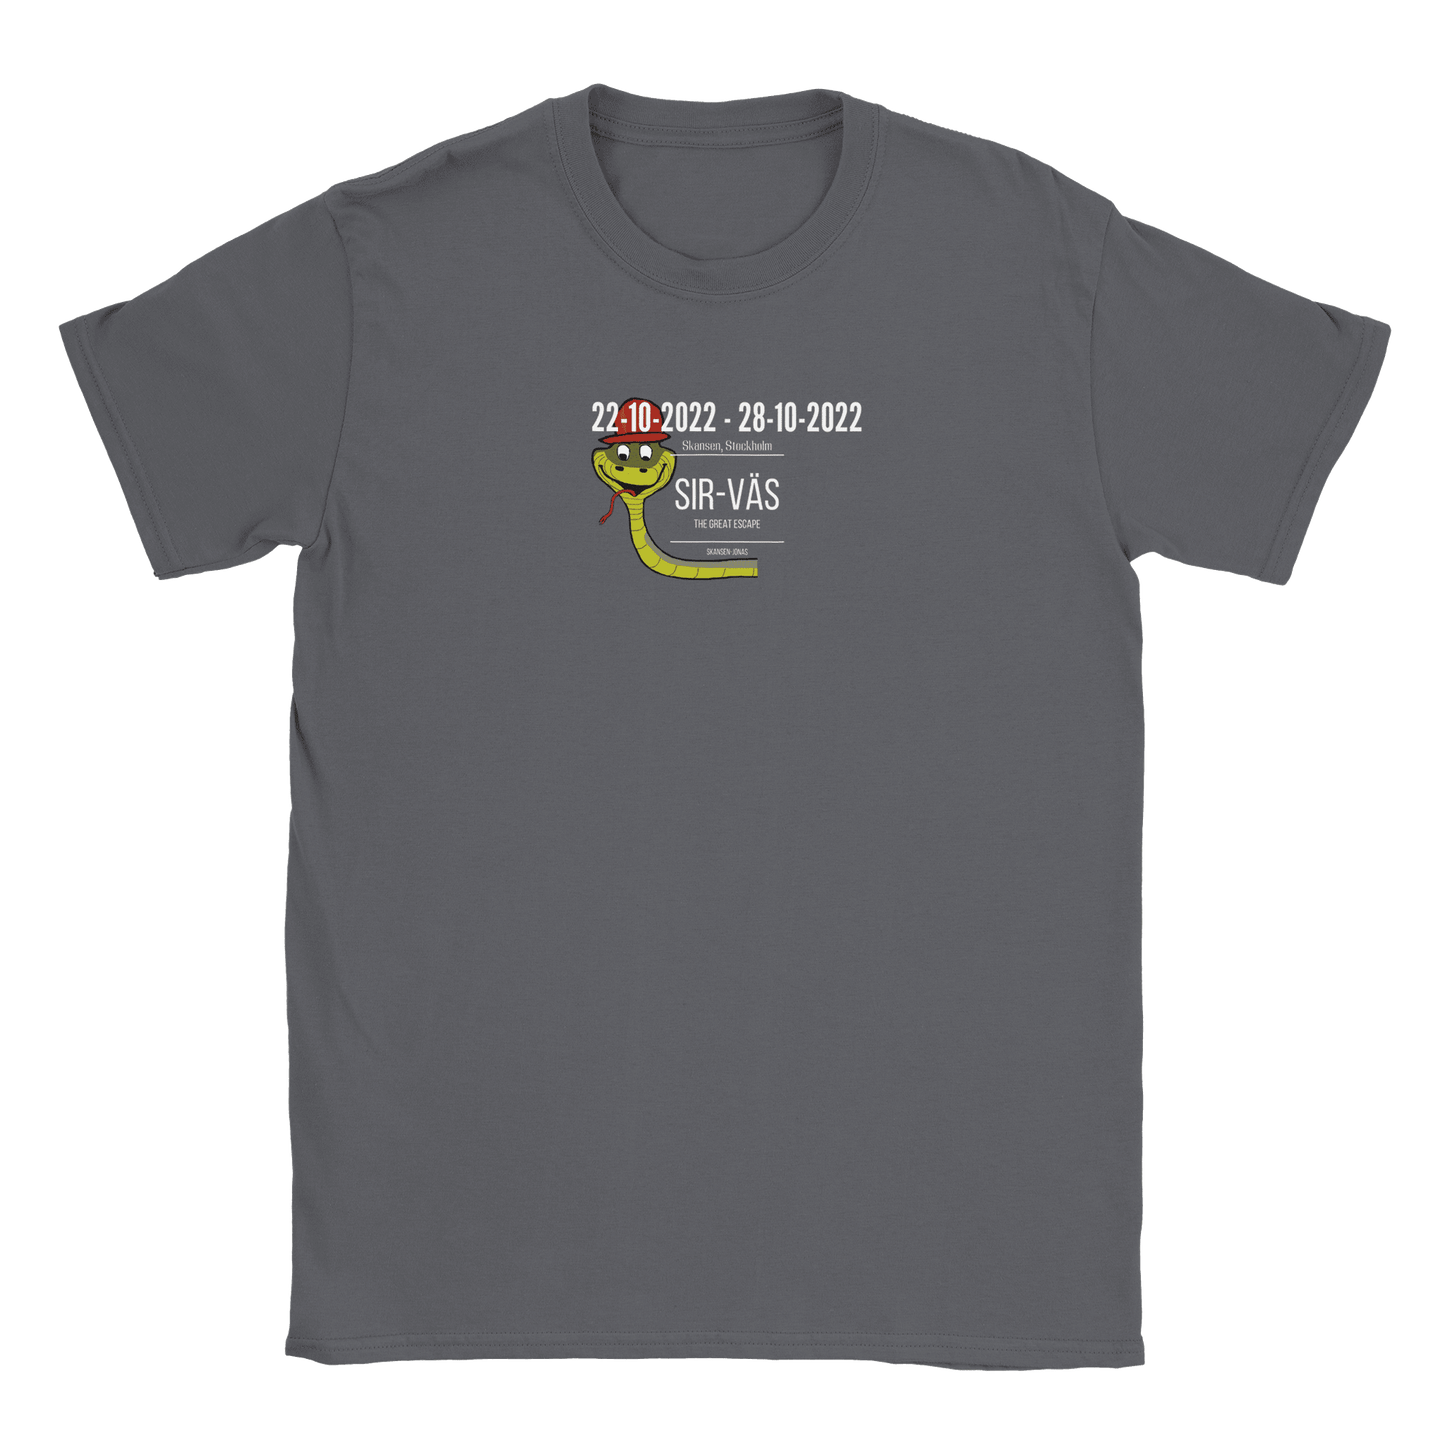 Sir-Väs - T-shirt Charcoal